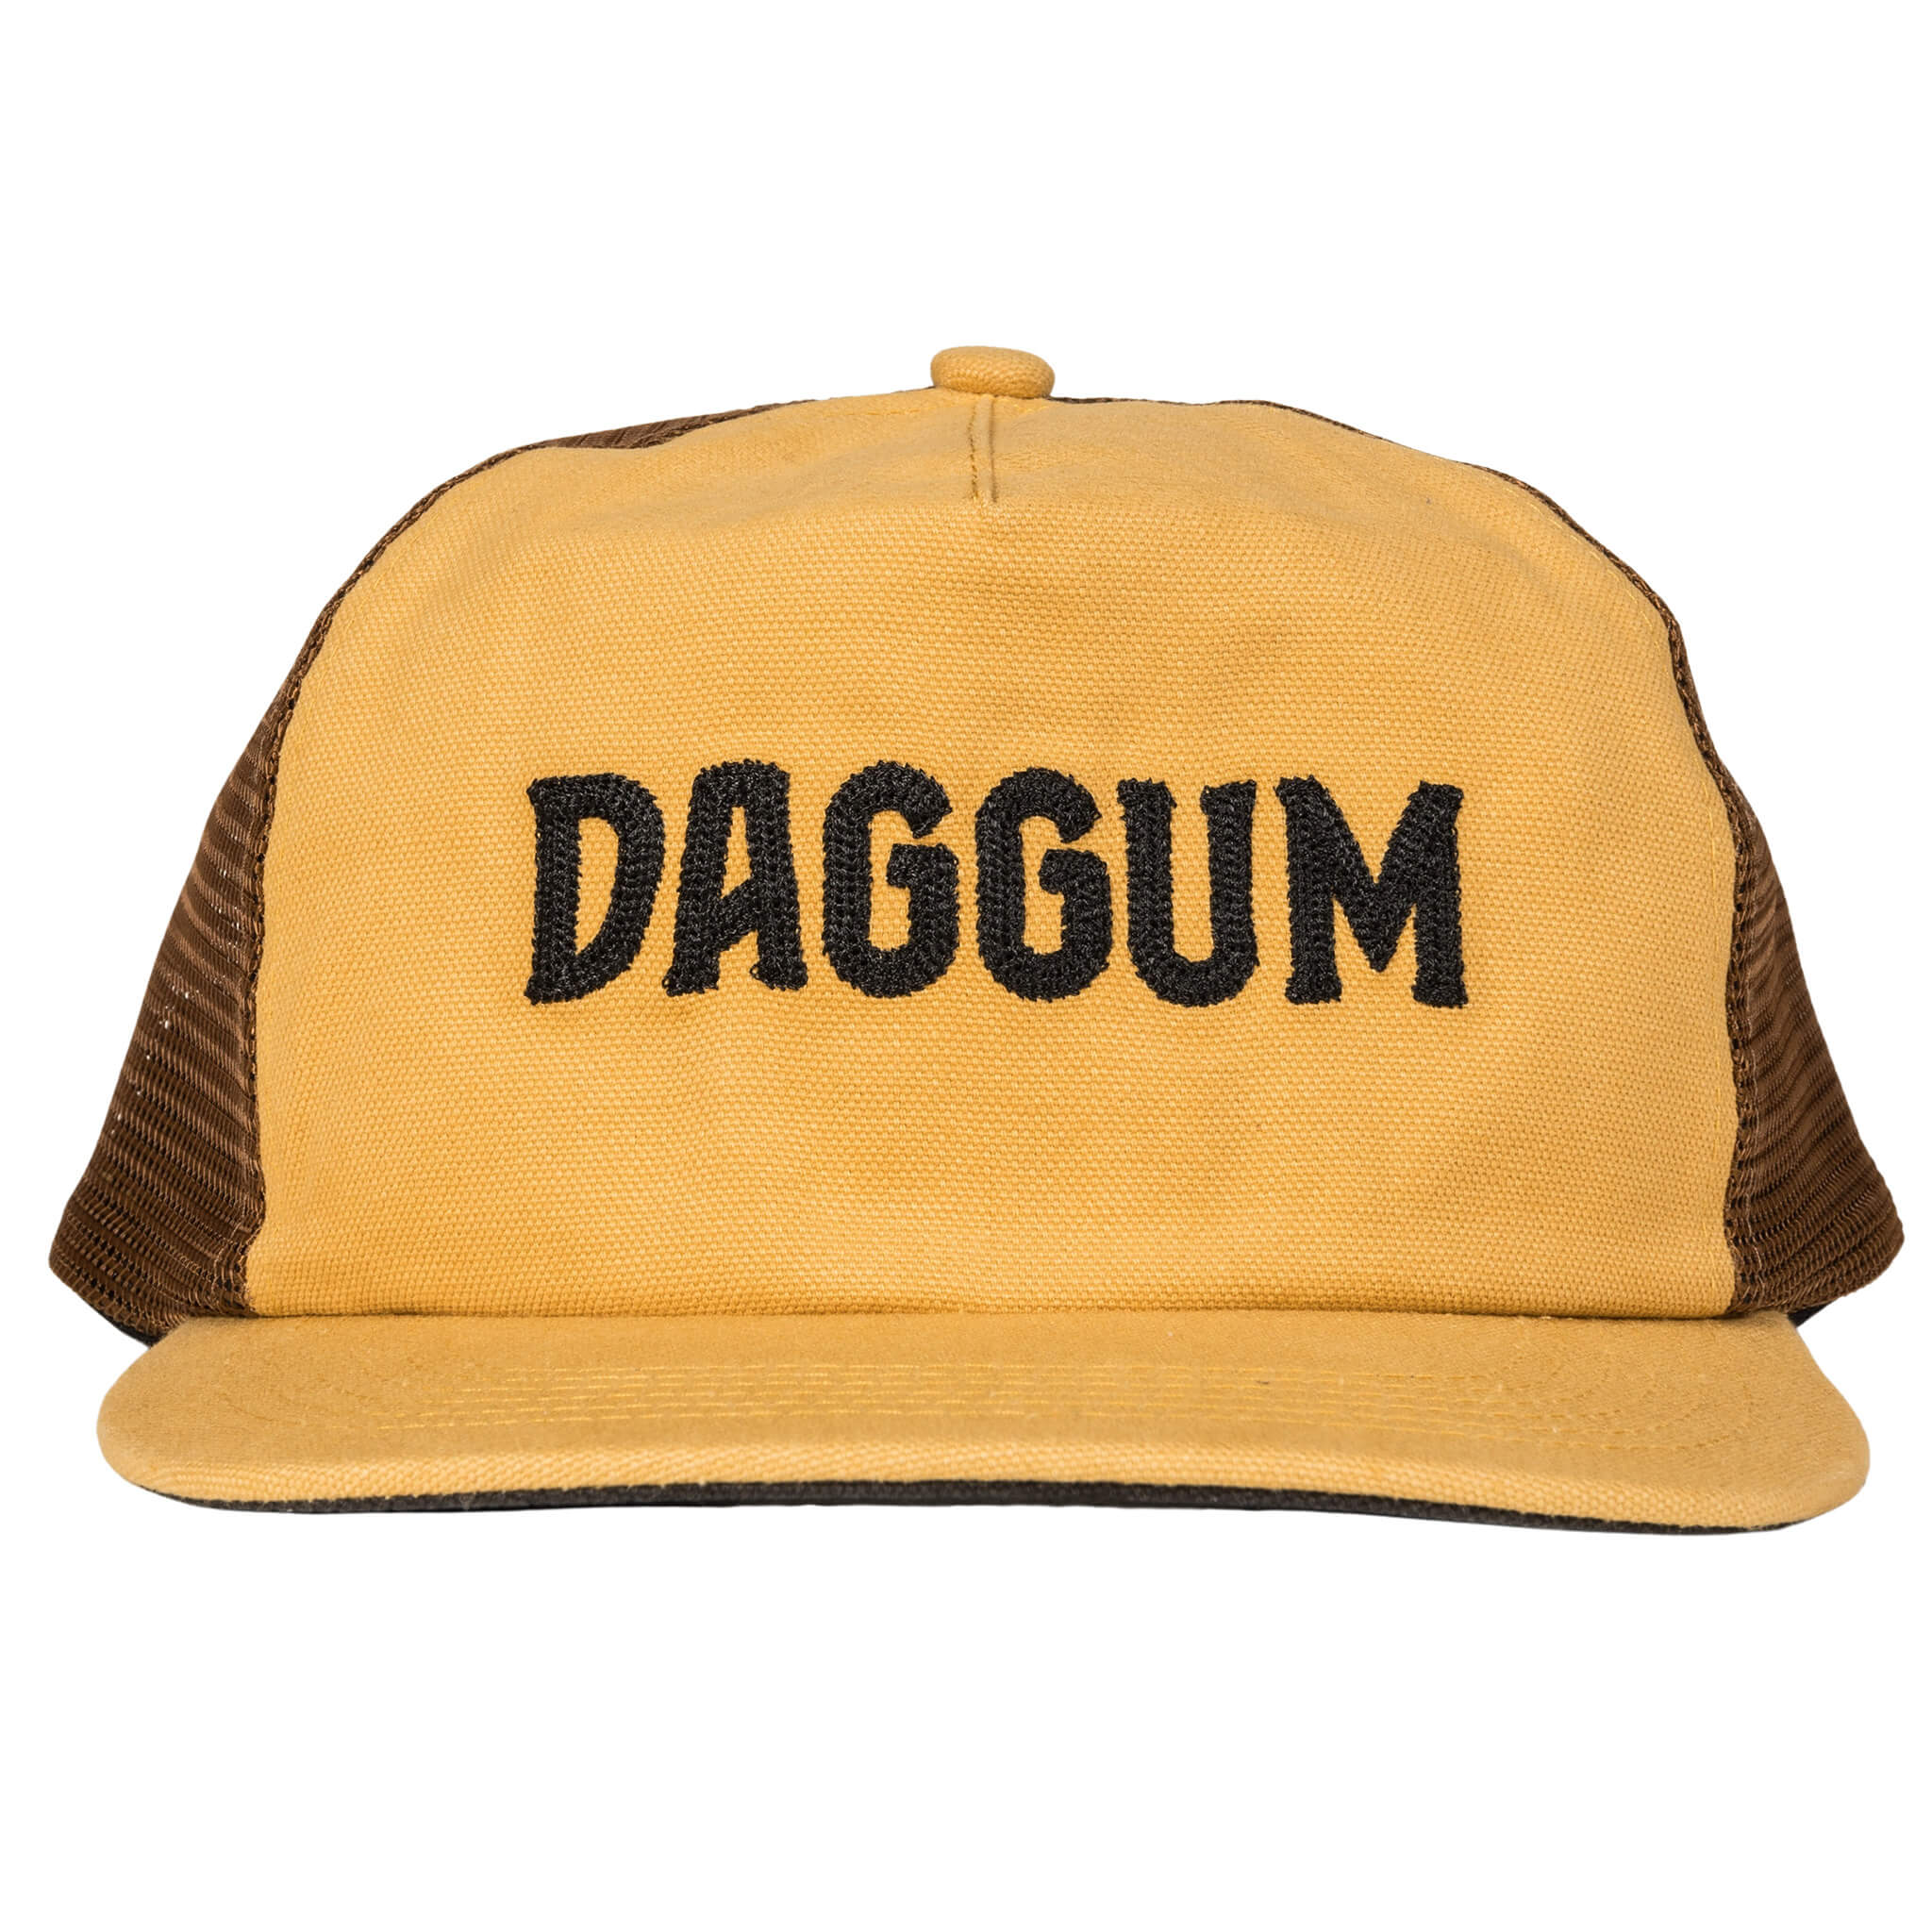 Daggum